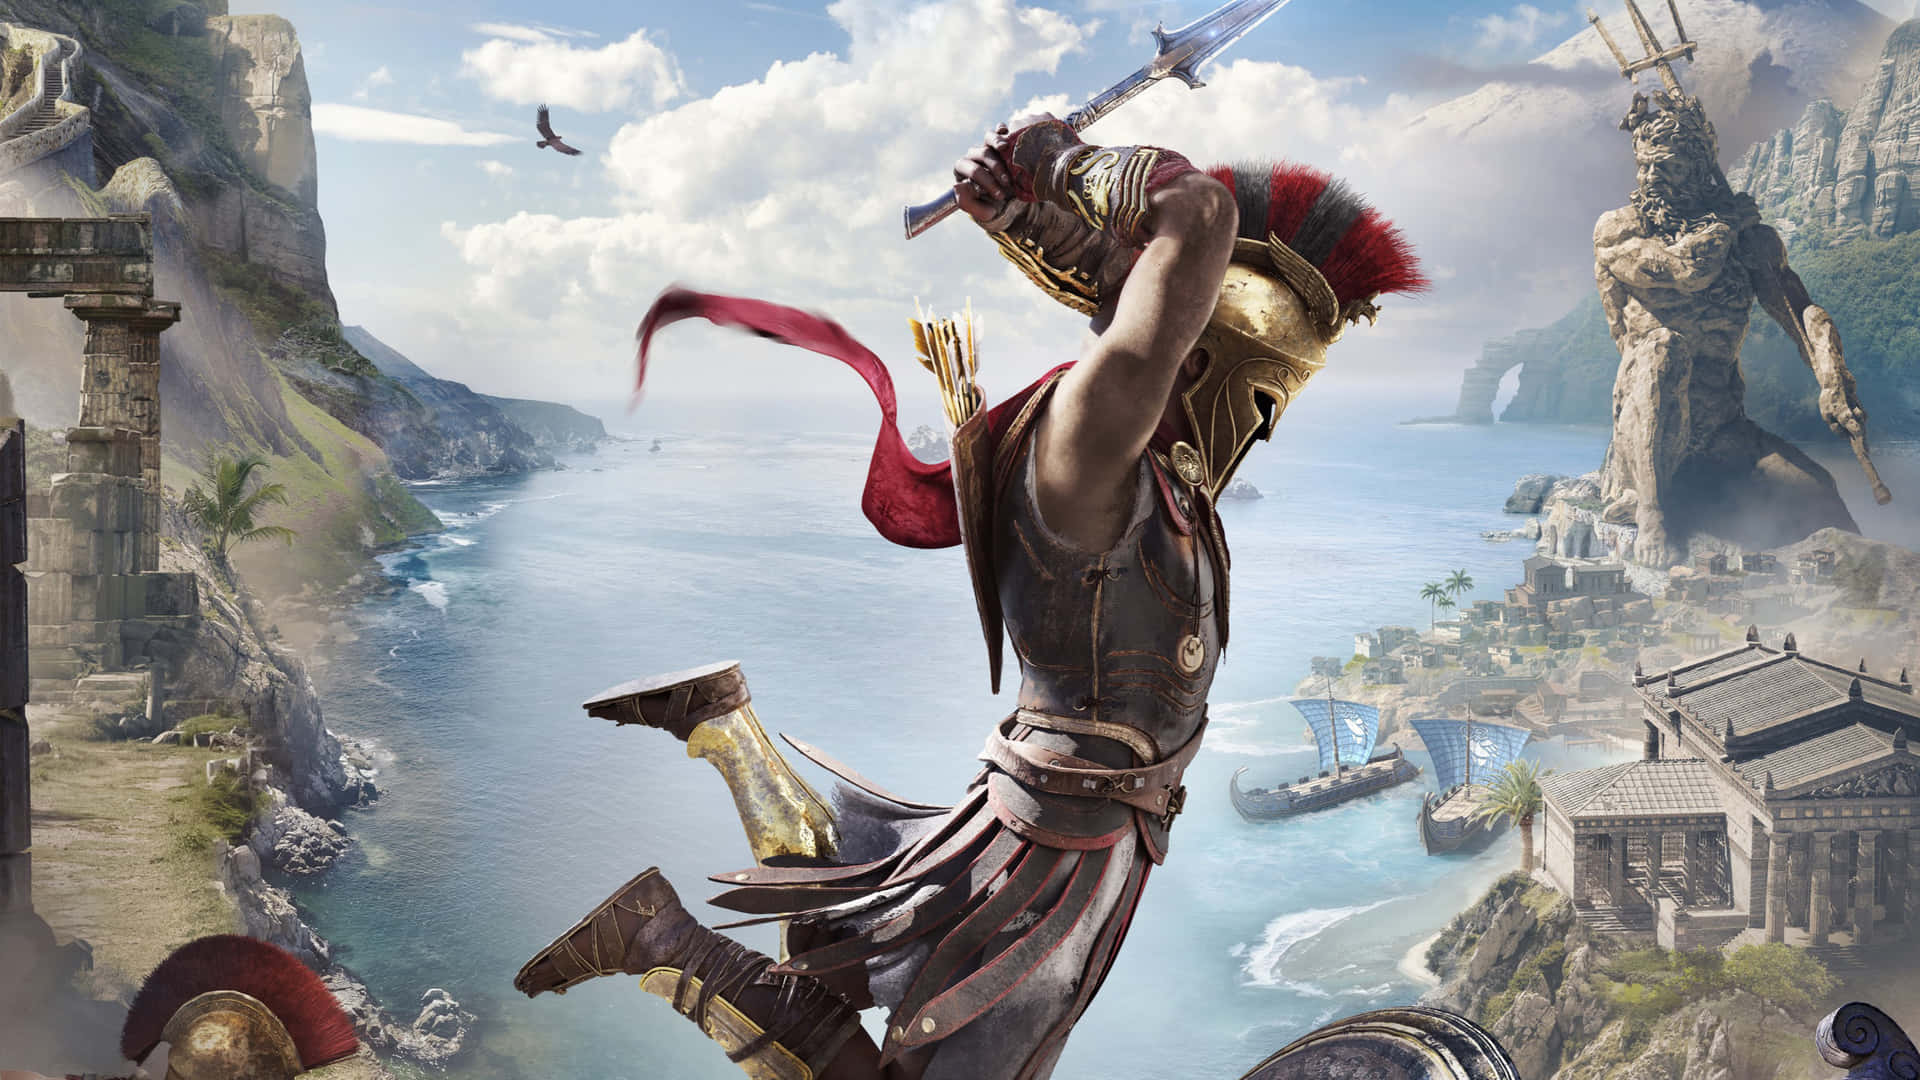 Immagineepica Di Alexios 1440p, Sfondo Di Assassin's Creed Odyssey.